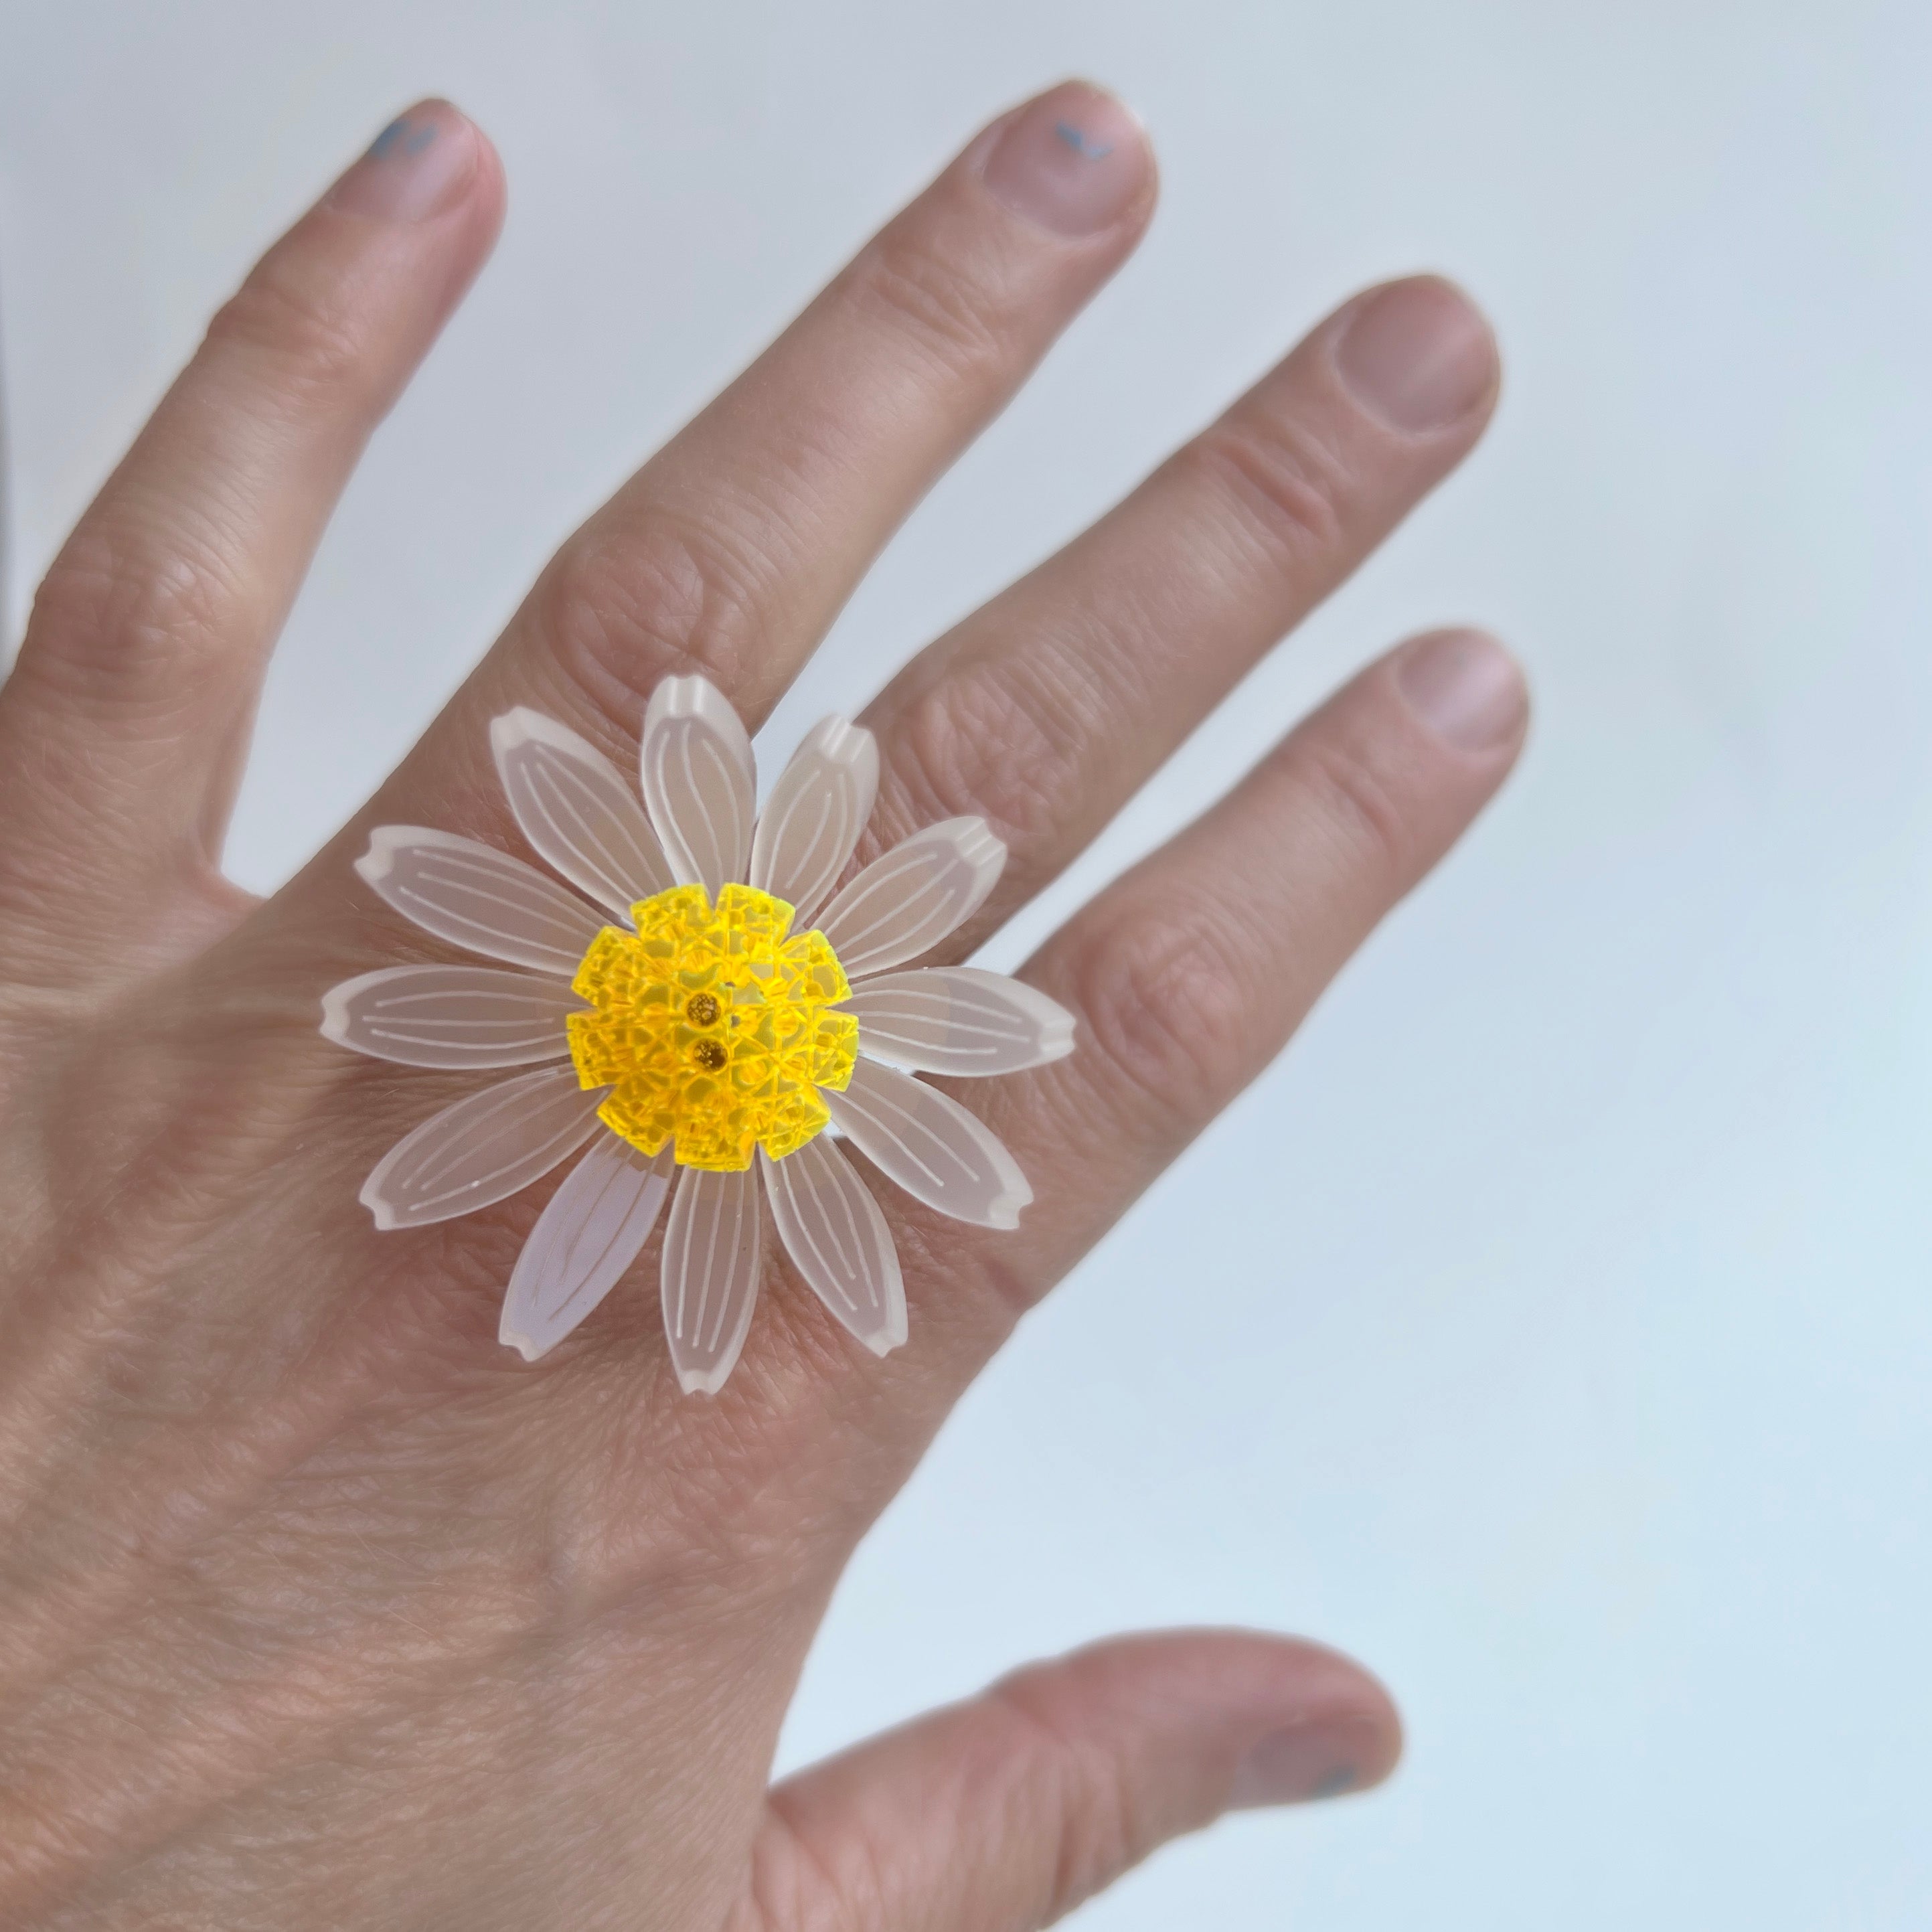 Daisy flower ring